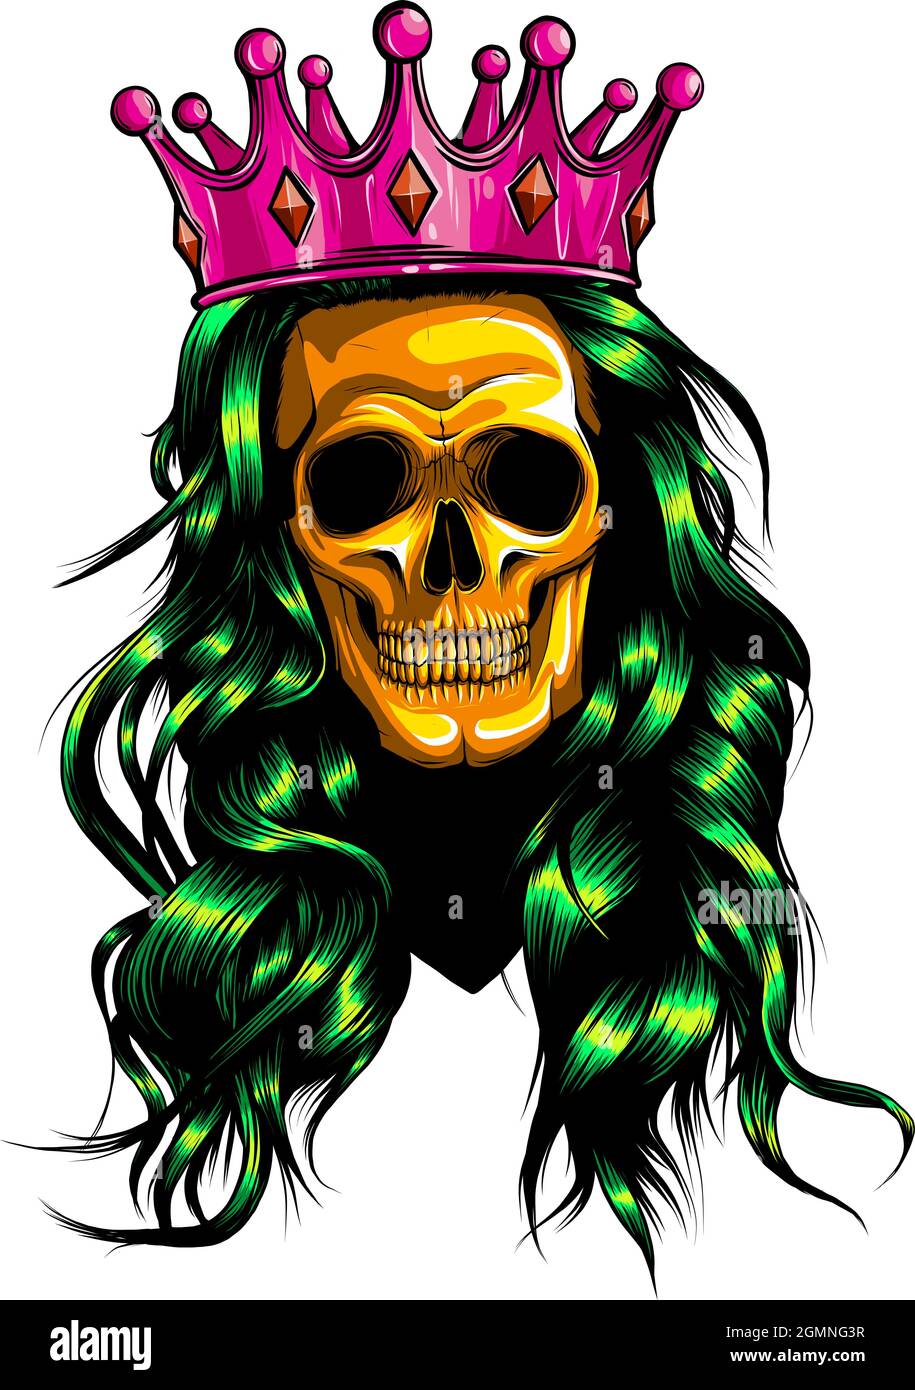 King Skull kissing the queen sugar skulls Tattoos Skull art Skull HD  phone wallpaper  Pxfuel